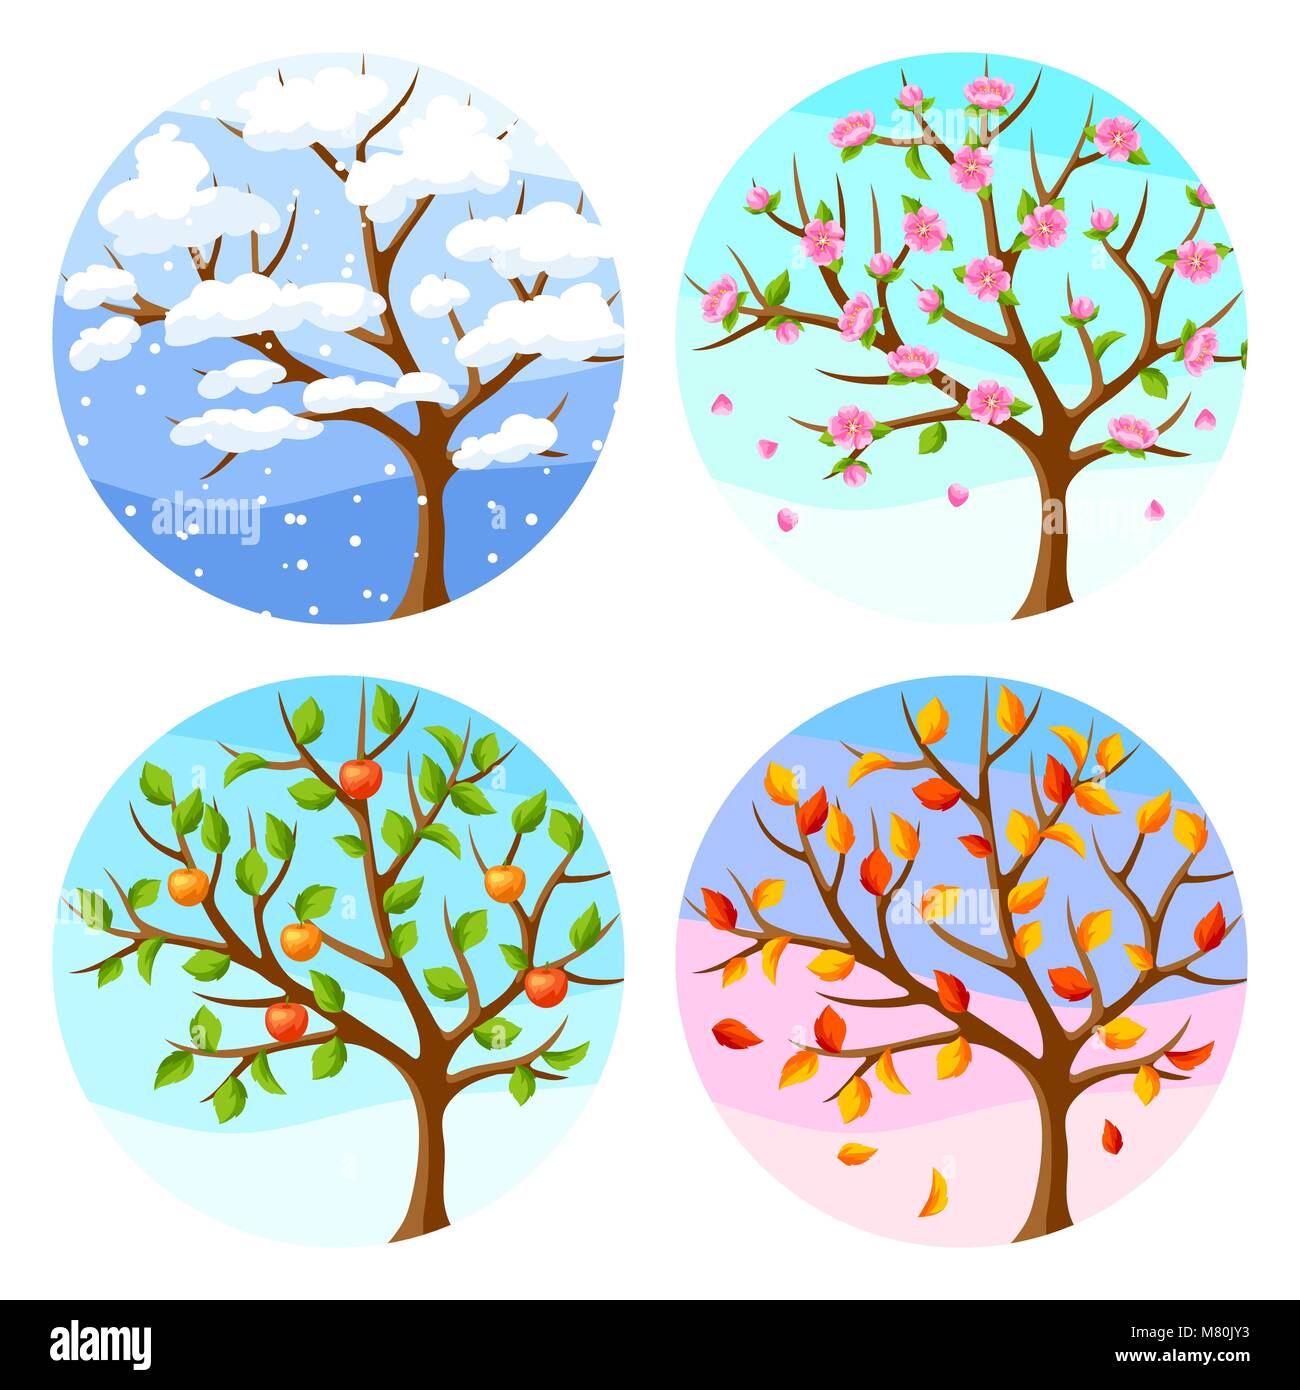 Quatre saisons. Illustration de l'arbre et le paysage en hiver, printemps, été, automne. Illustration de Vecteur